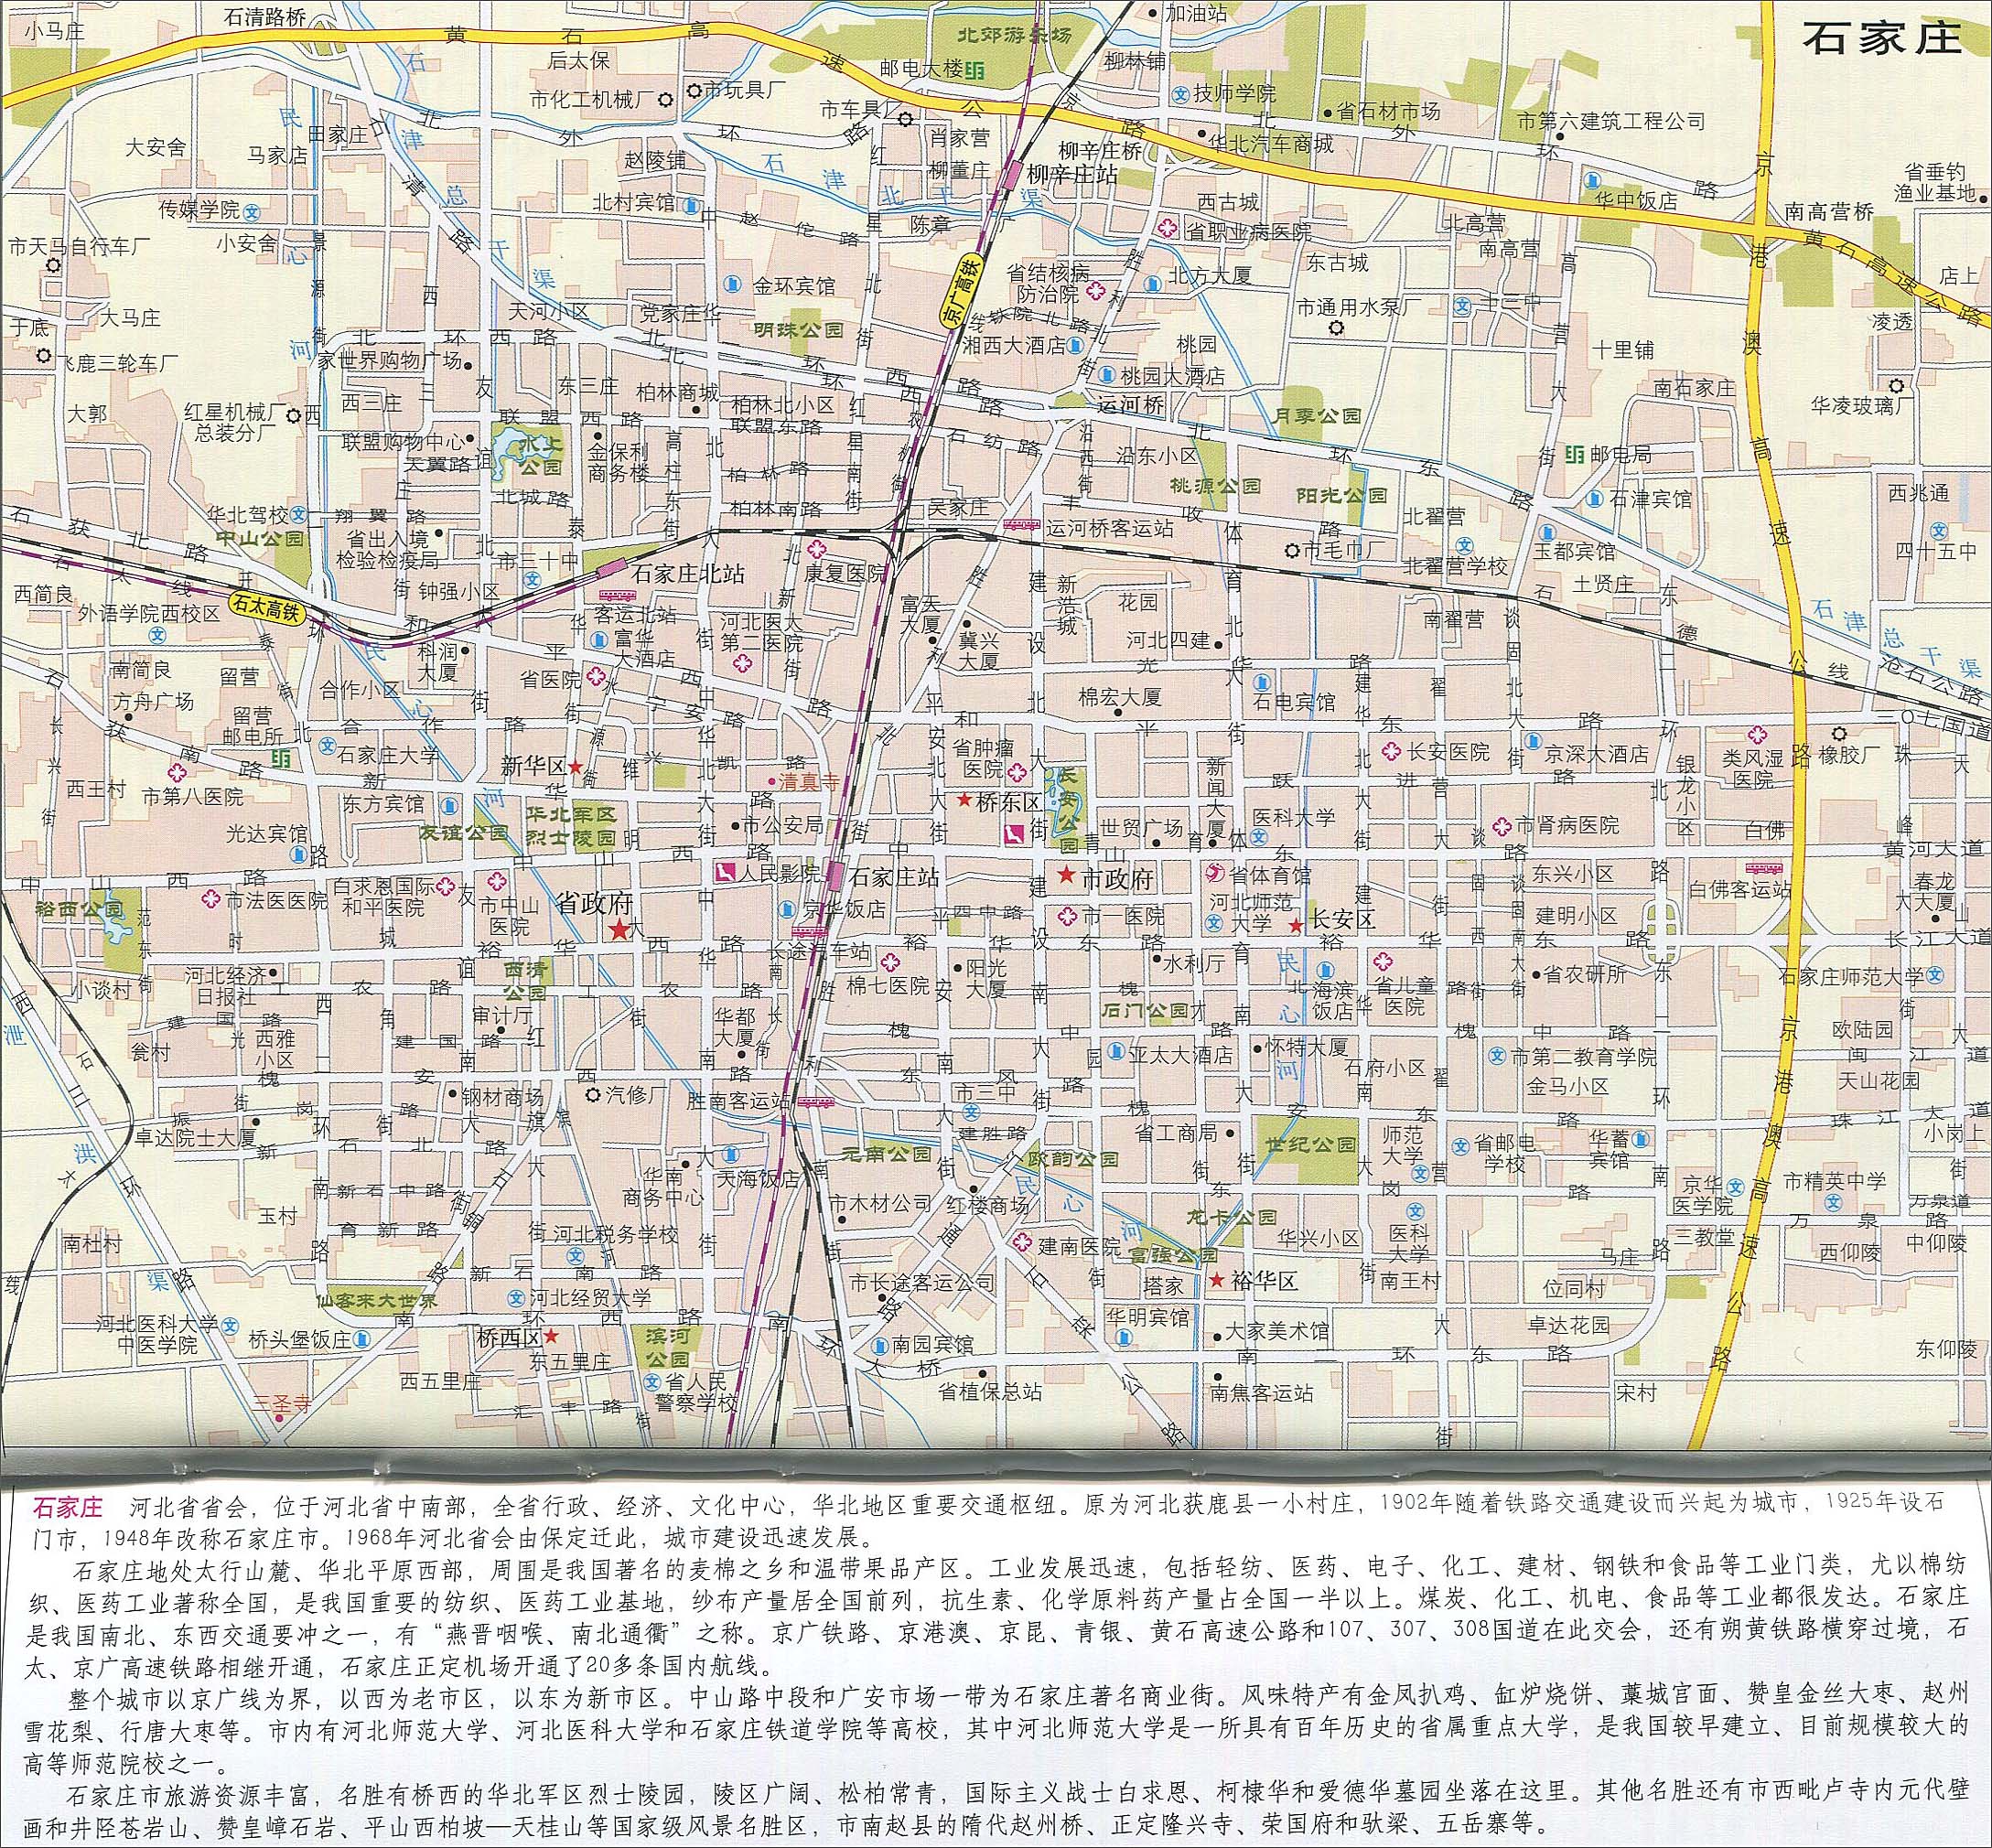 保定市  沧州市  衡水市  邢台市  邯郸市 上一幅地图: 石家庄地图图片